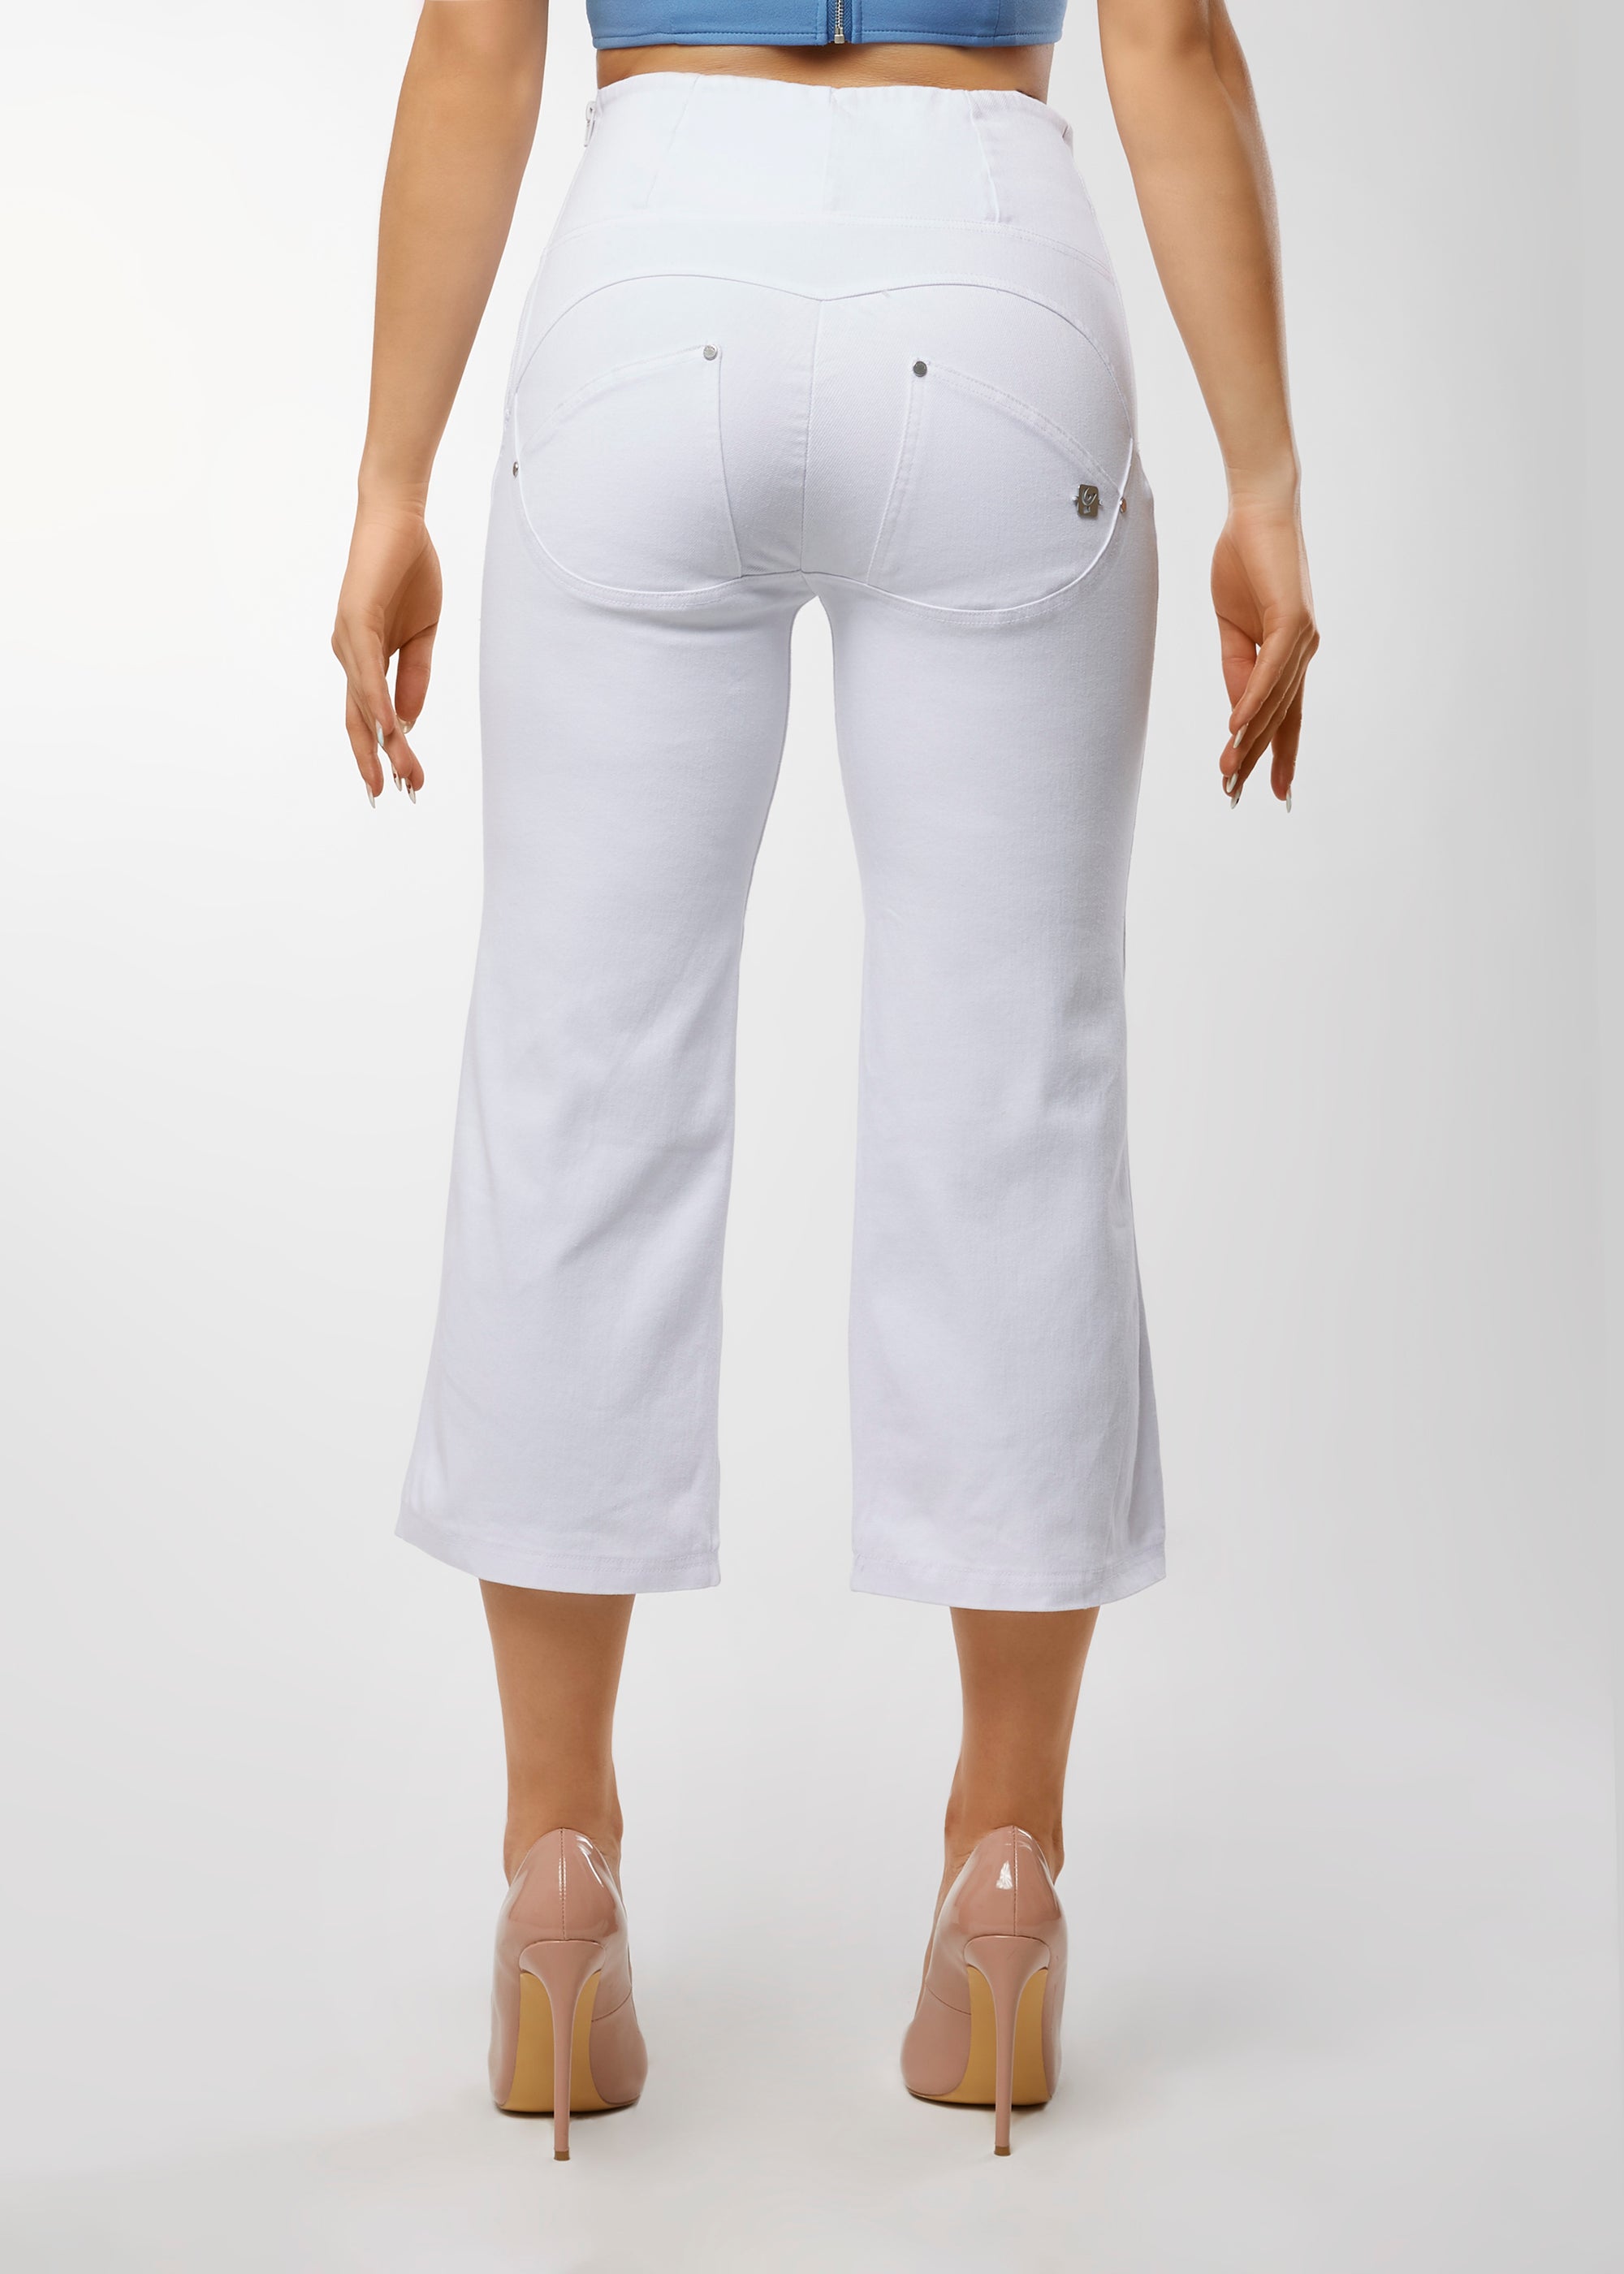 WR.UP® Snug Fashion - High Rise Capri Straight Leg - White